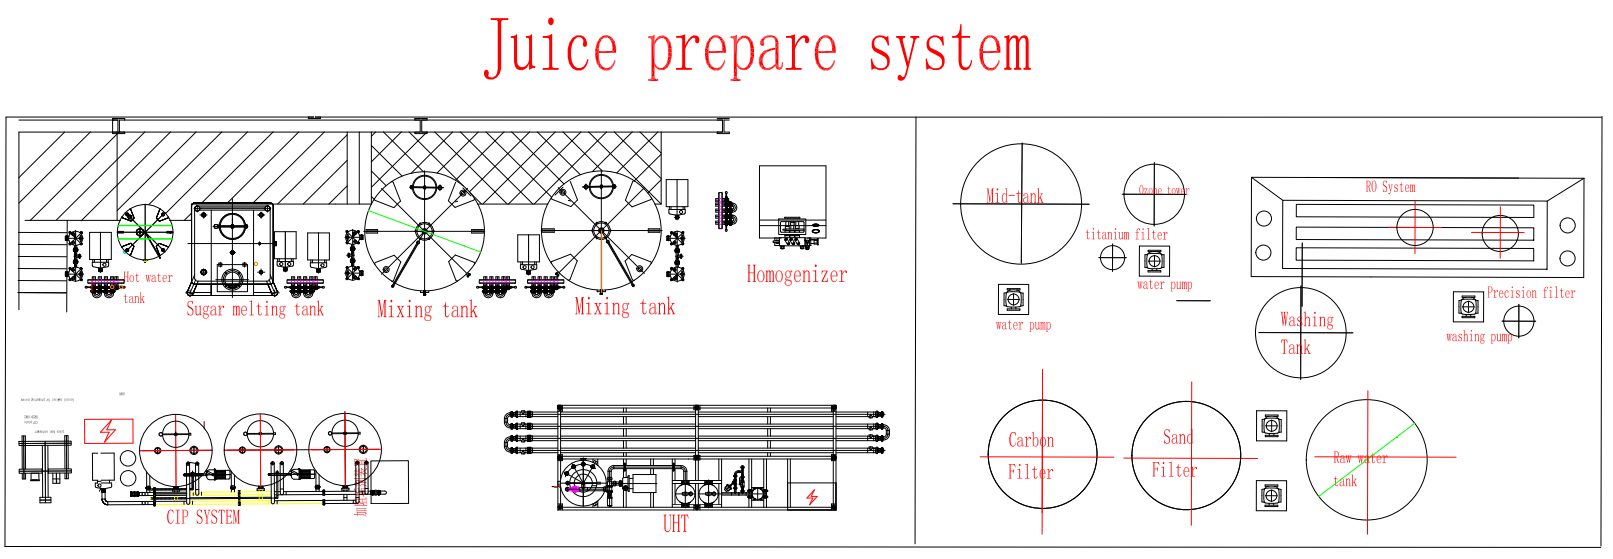 juice prepare system 1